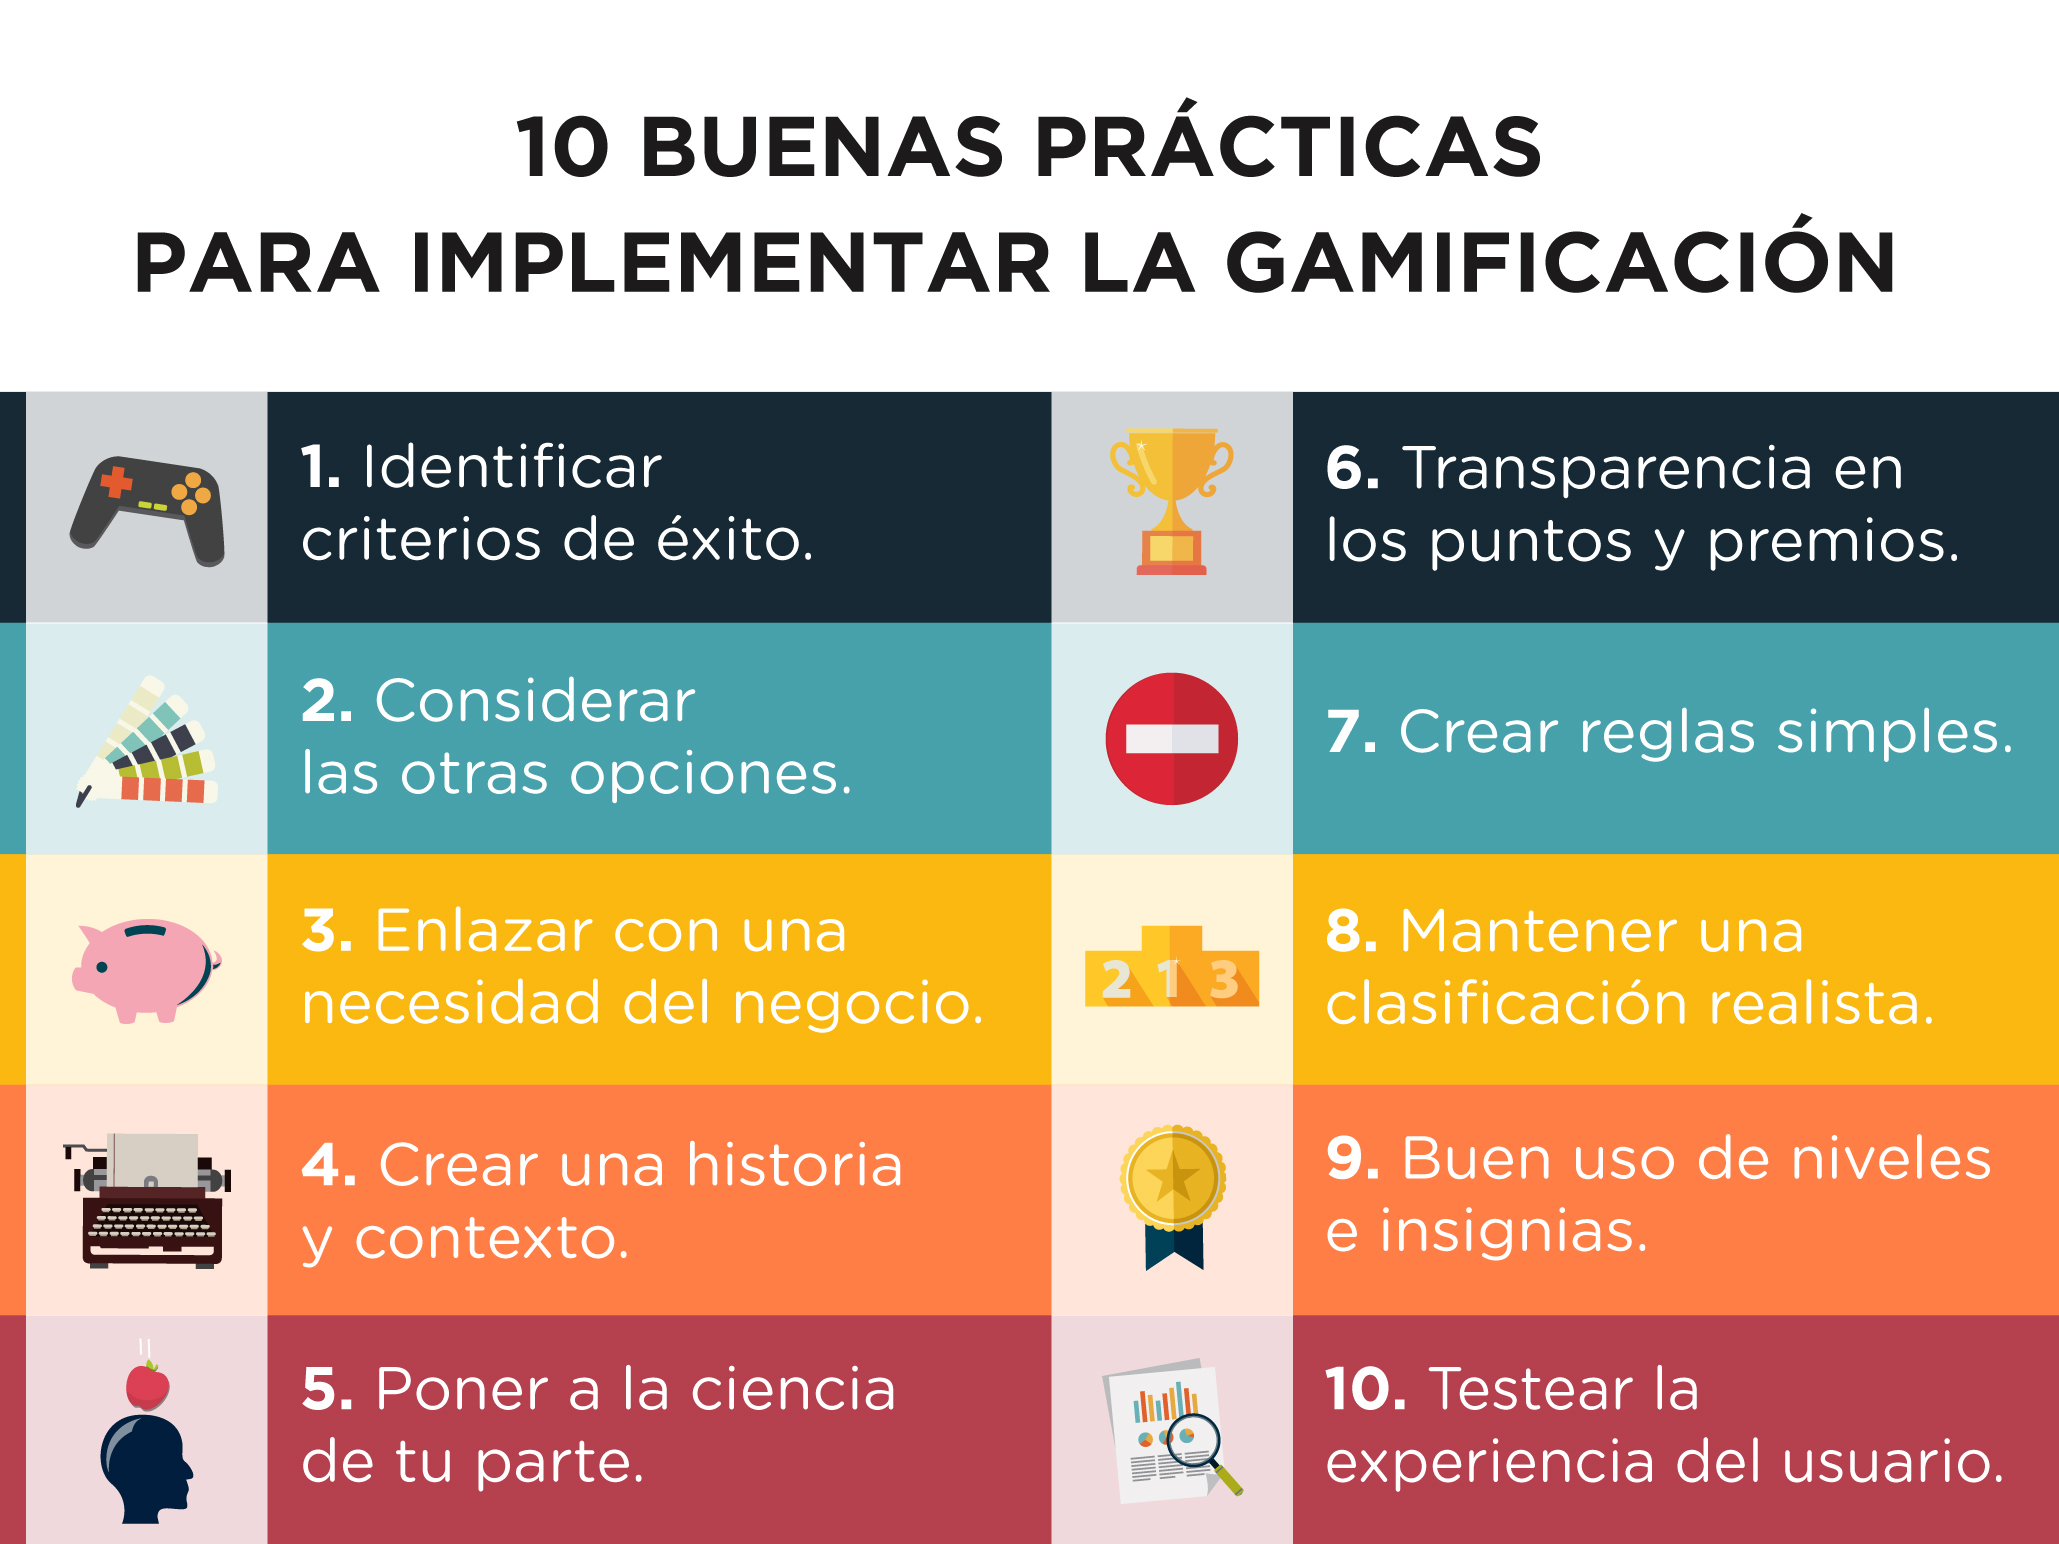 10 buenas prácticas para implementar la gamificación